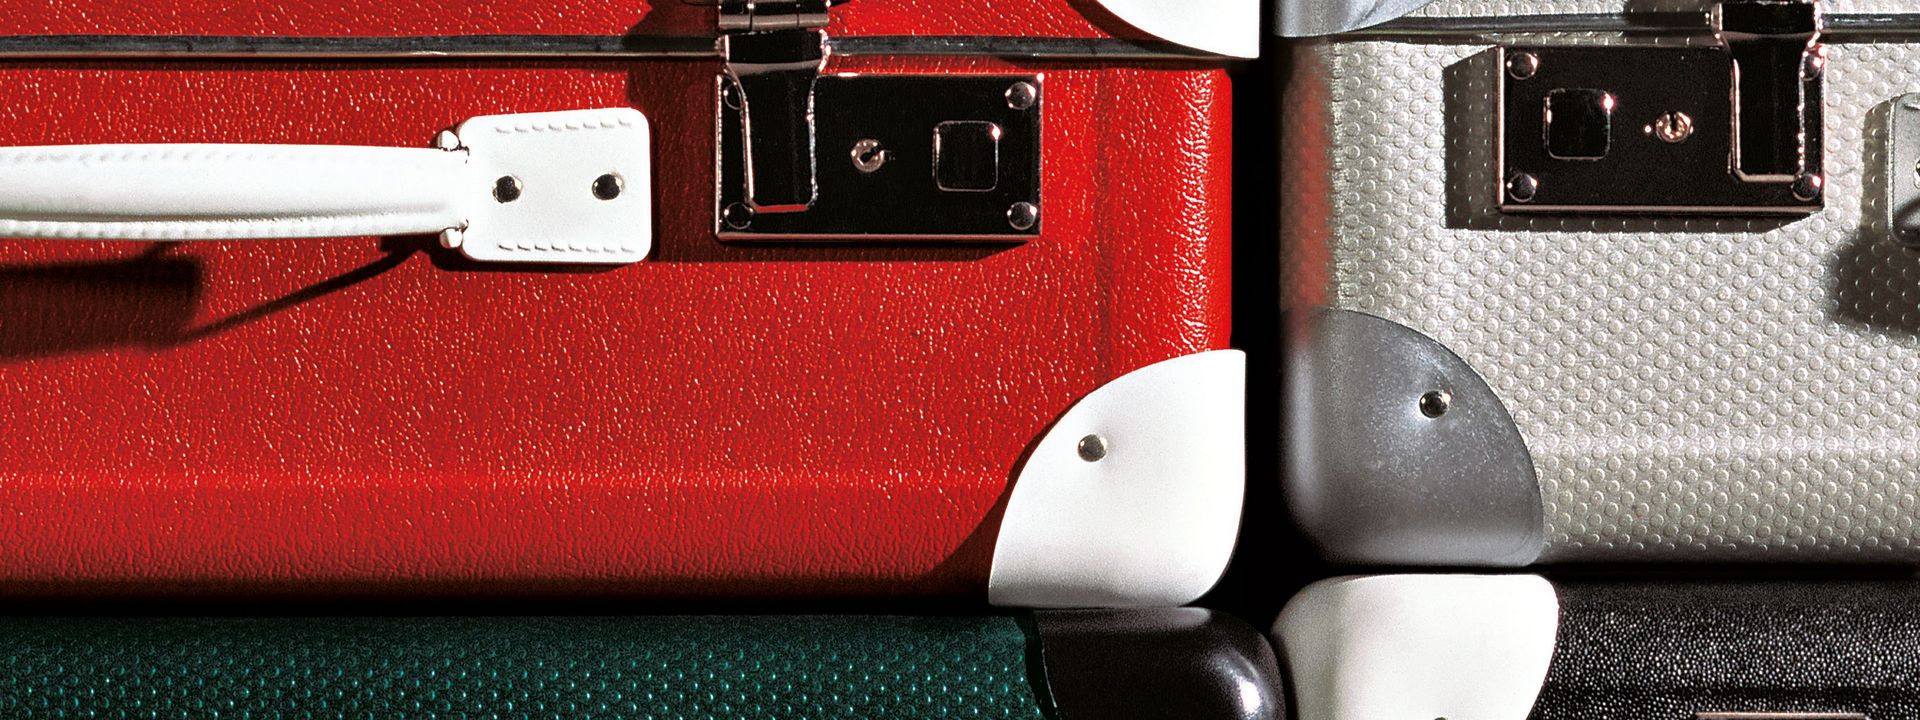 Ausschnitt von vier aufeinandergestapelten Koffern. Ein Koffer ist rot mit weißen Ecken, einer grau mit silbernen Ecken, einer schwarz mit weißen Ecken und einer grün mit schwarzen Ecken.